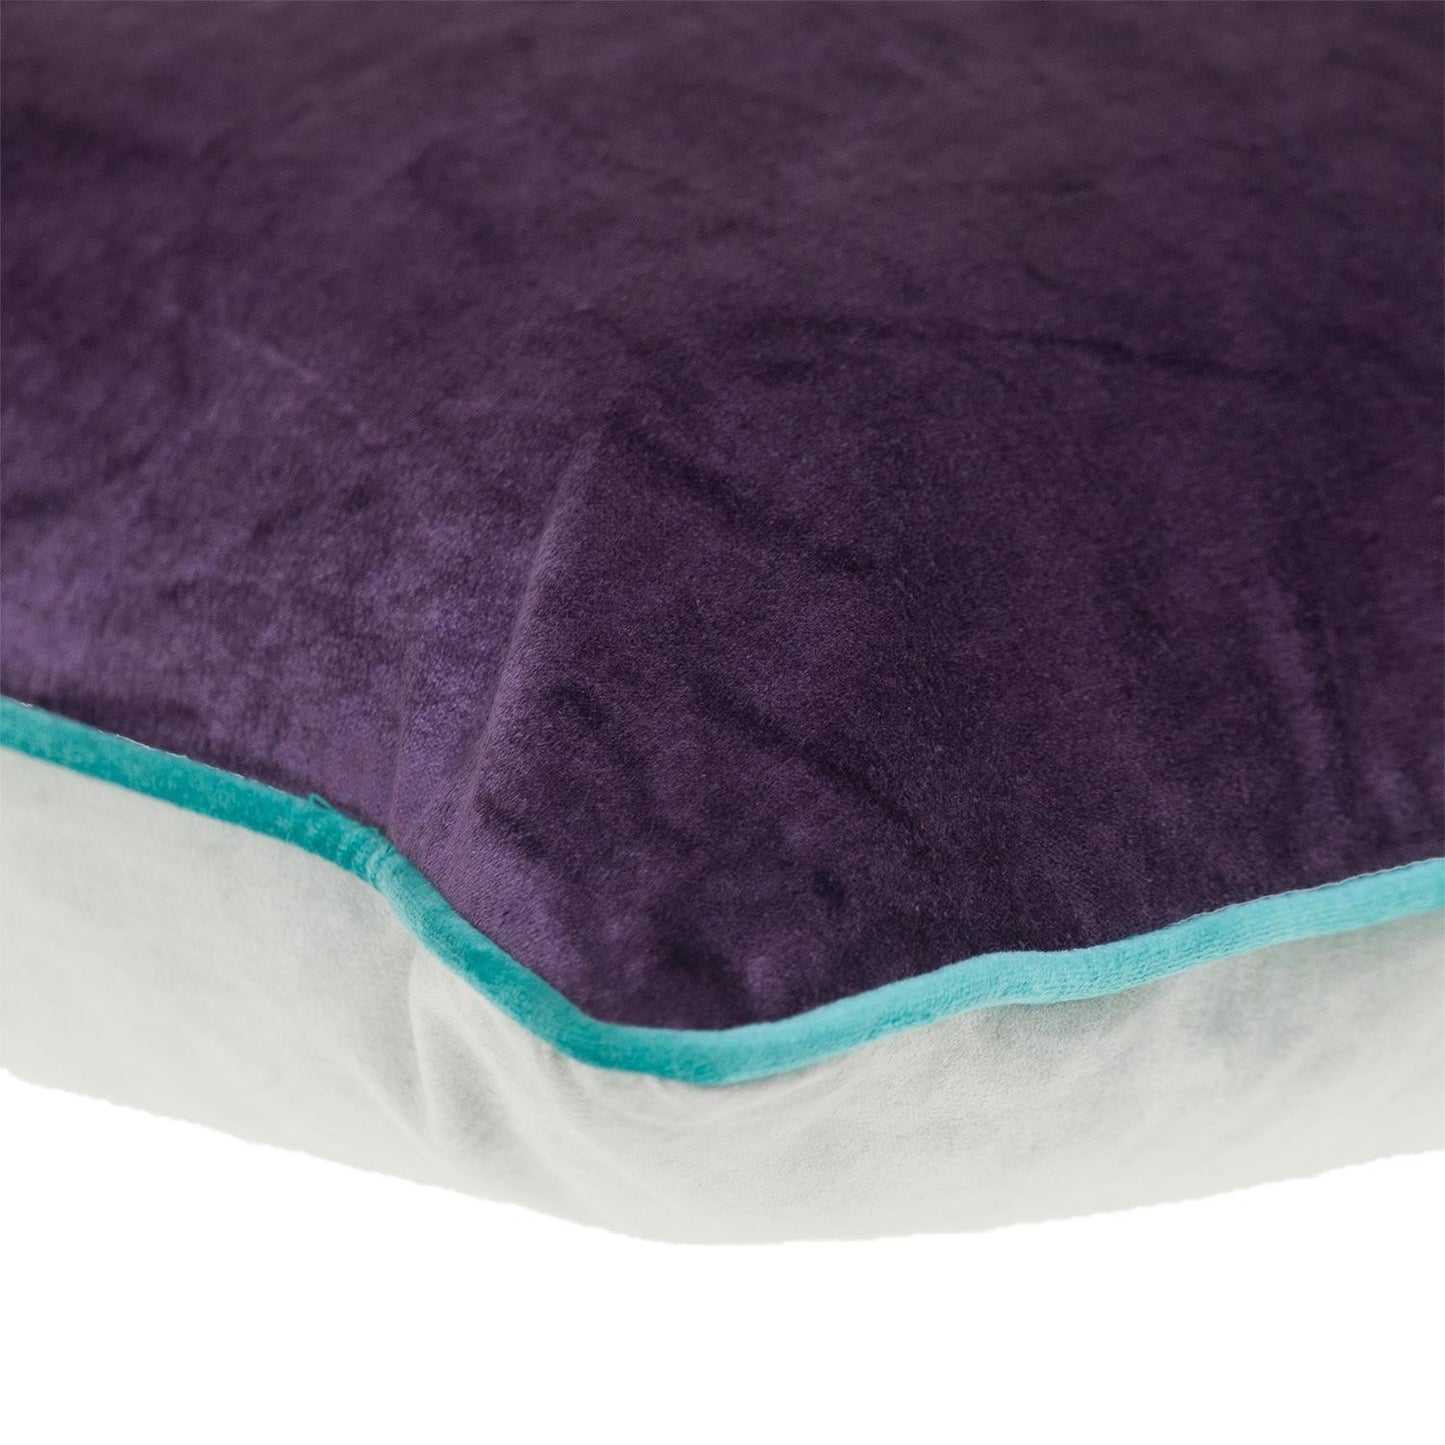 Purple and White Reversible Velvet Throw Pillow